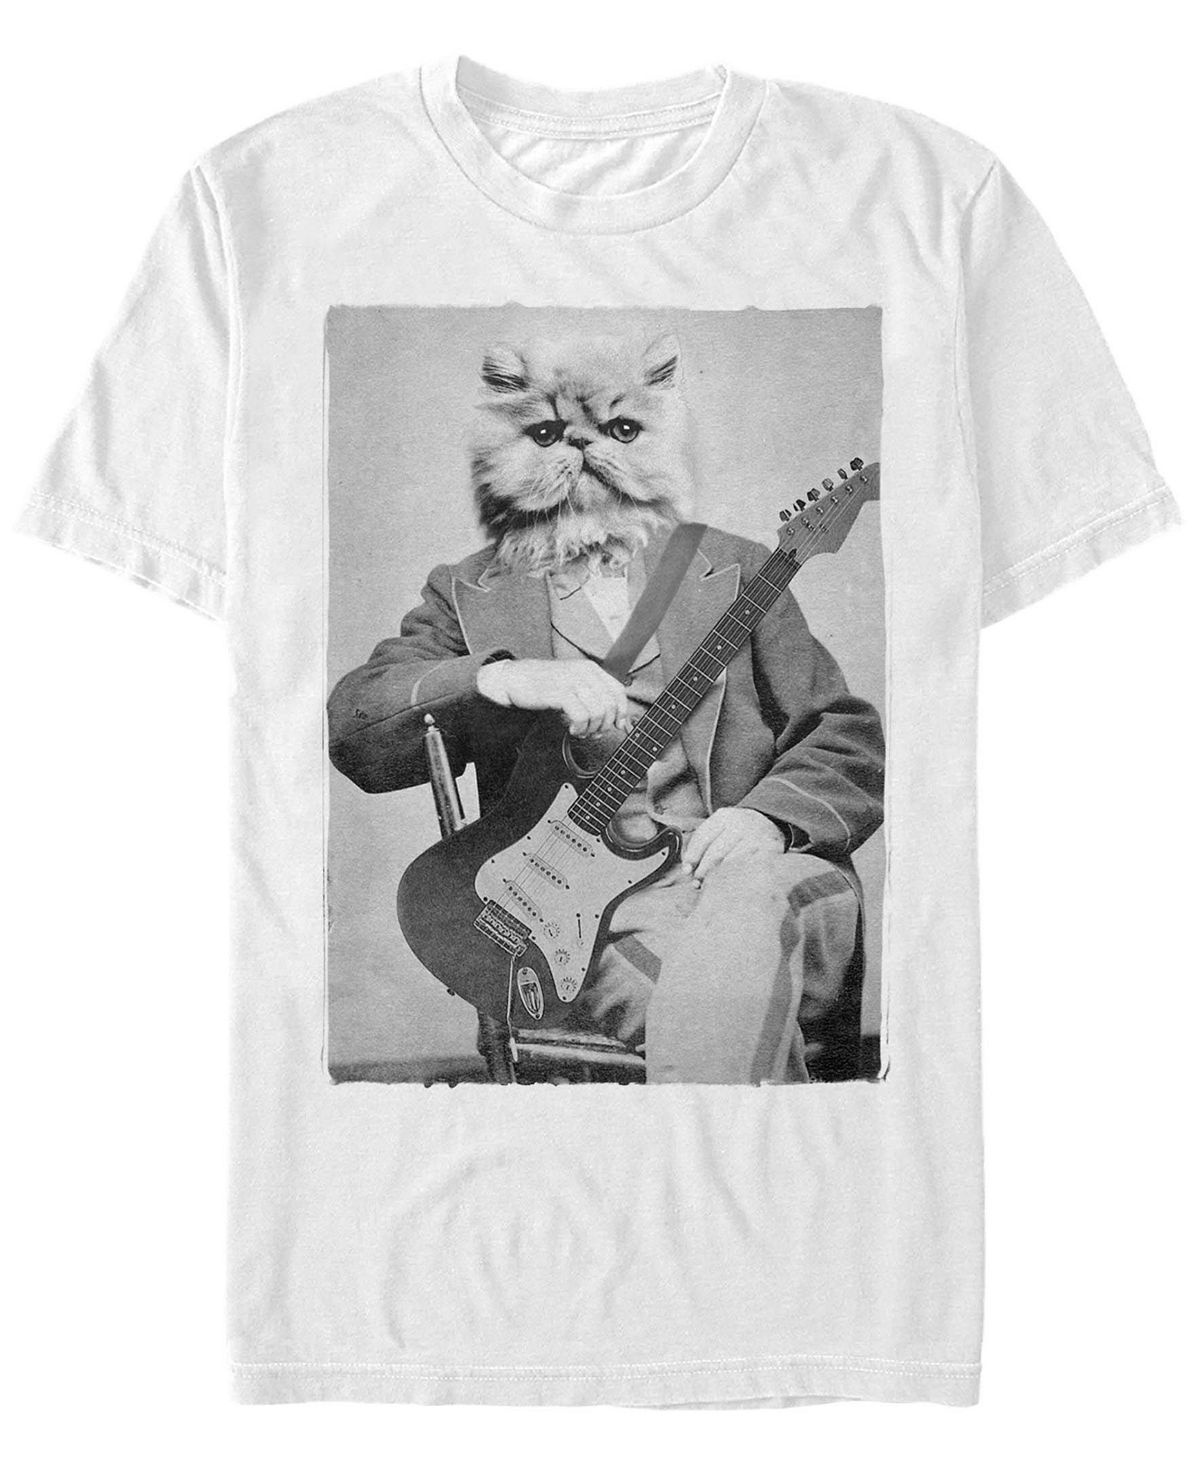 Мужская футболка с круглым вырезом с короткими рукавами cat levine Fifth Sun, белый фотографии